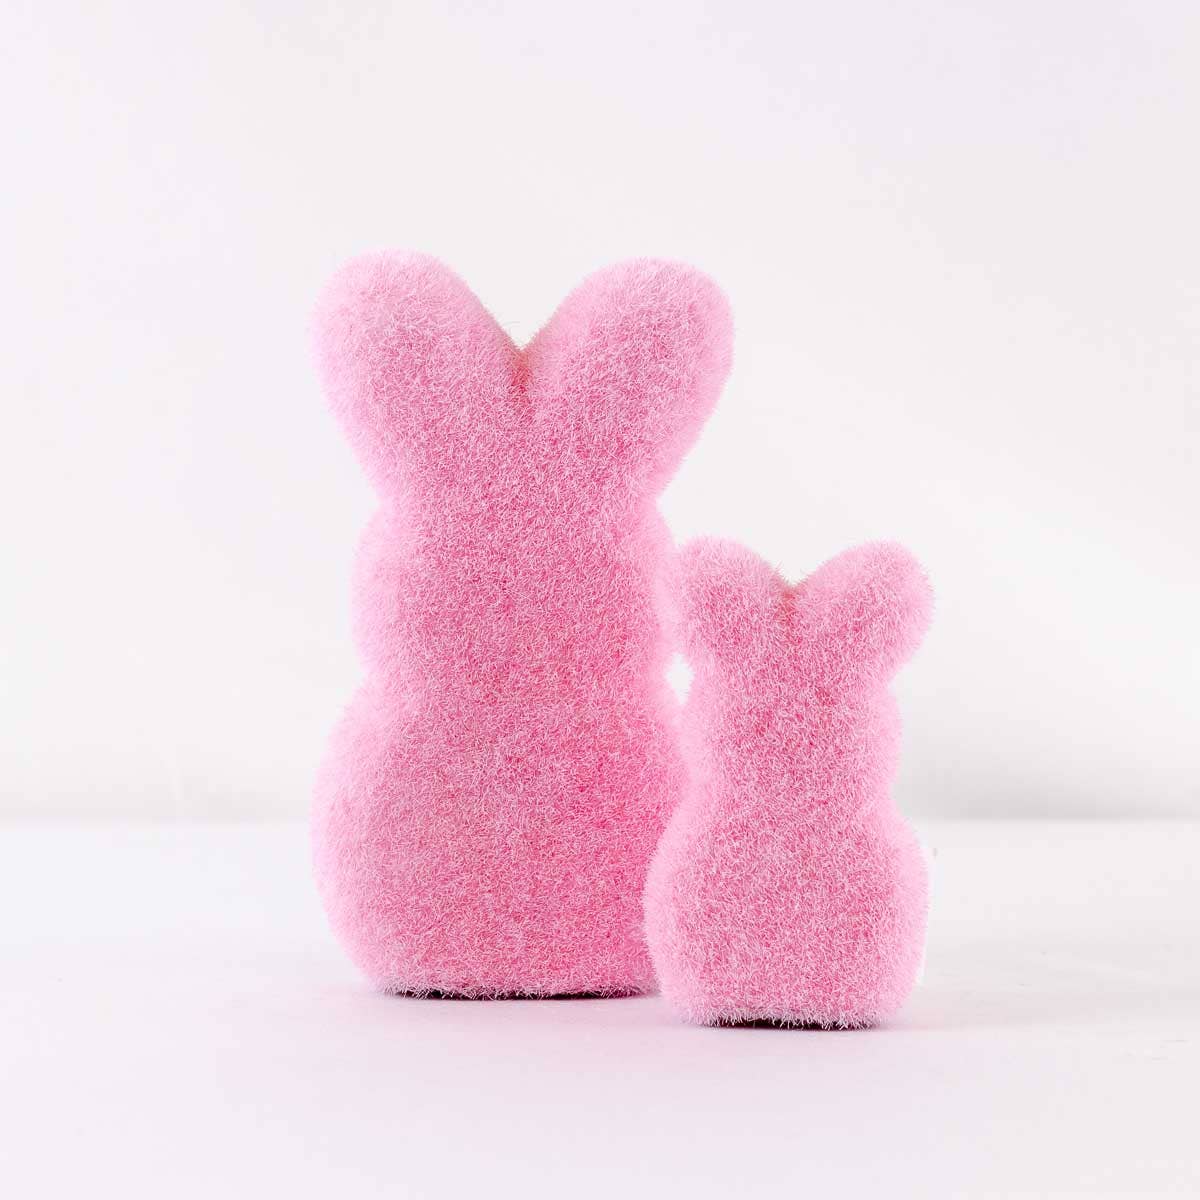 Poppy Bunny   Hot Pink   1.5x6.25x3.75